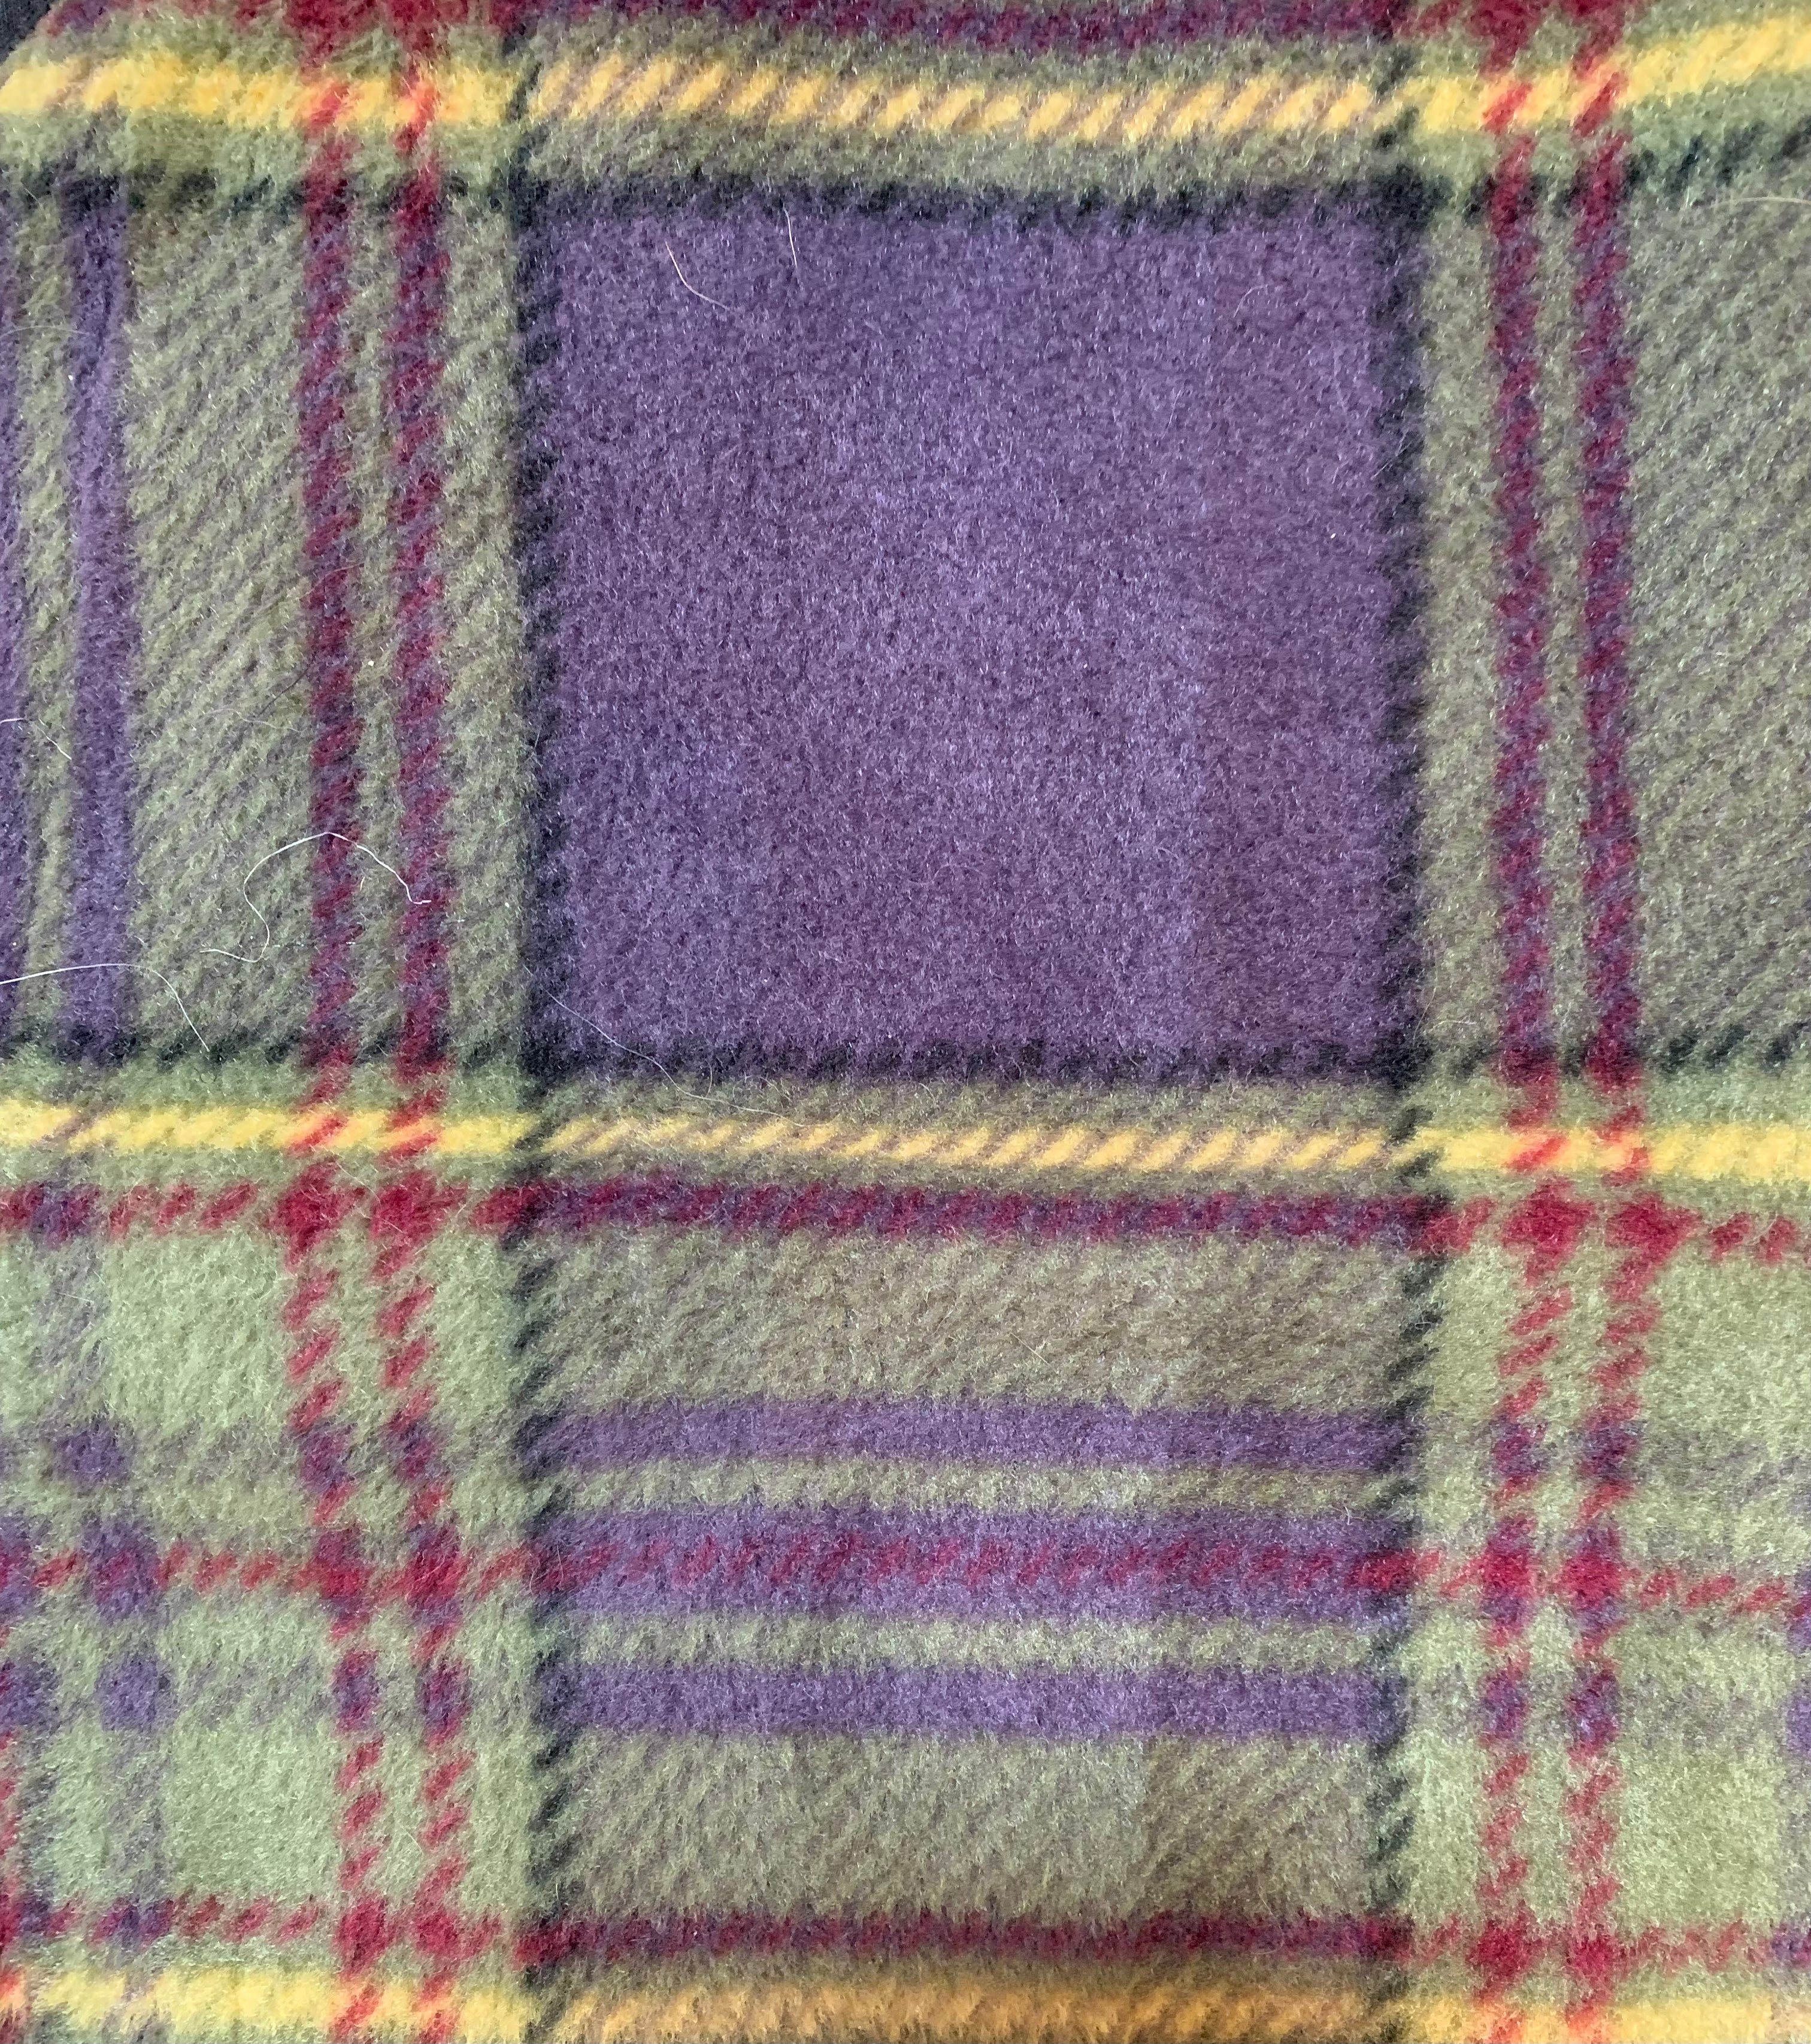 Doggie Styles Waterproof Reversible Fleece Lined Jacket, Purple & Olive Green Plaid